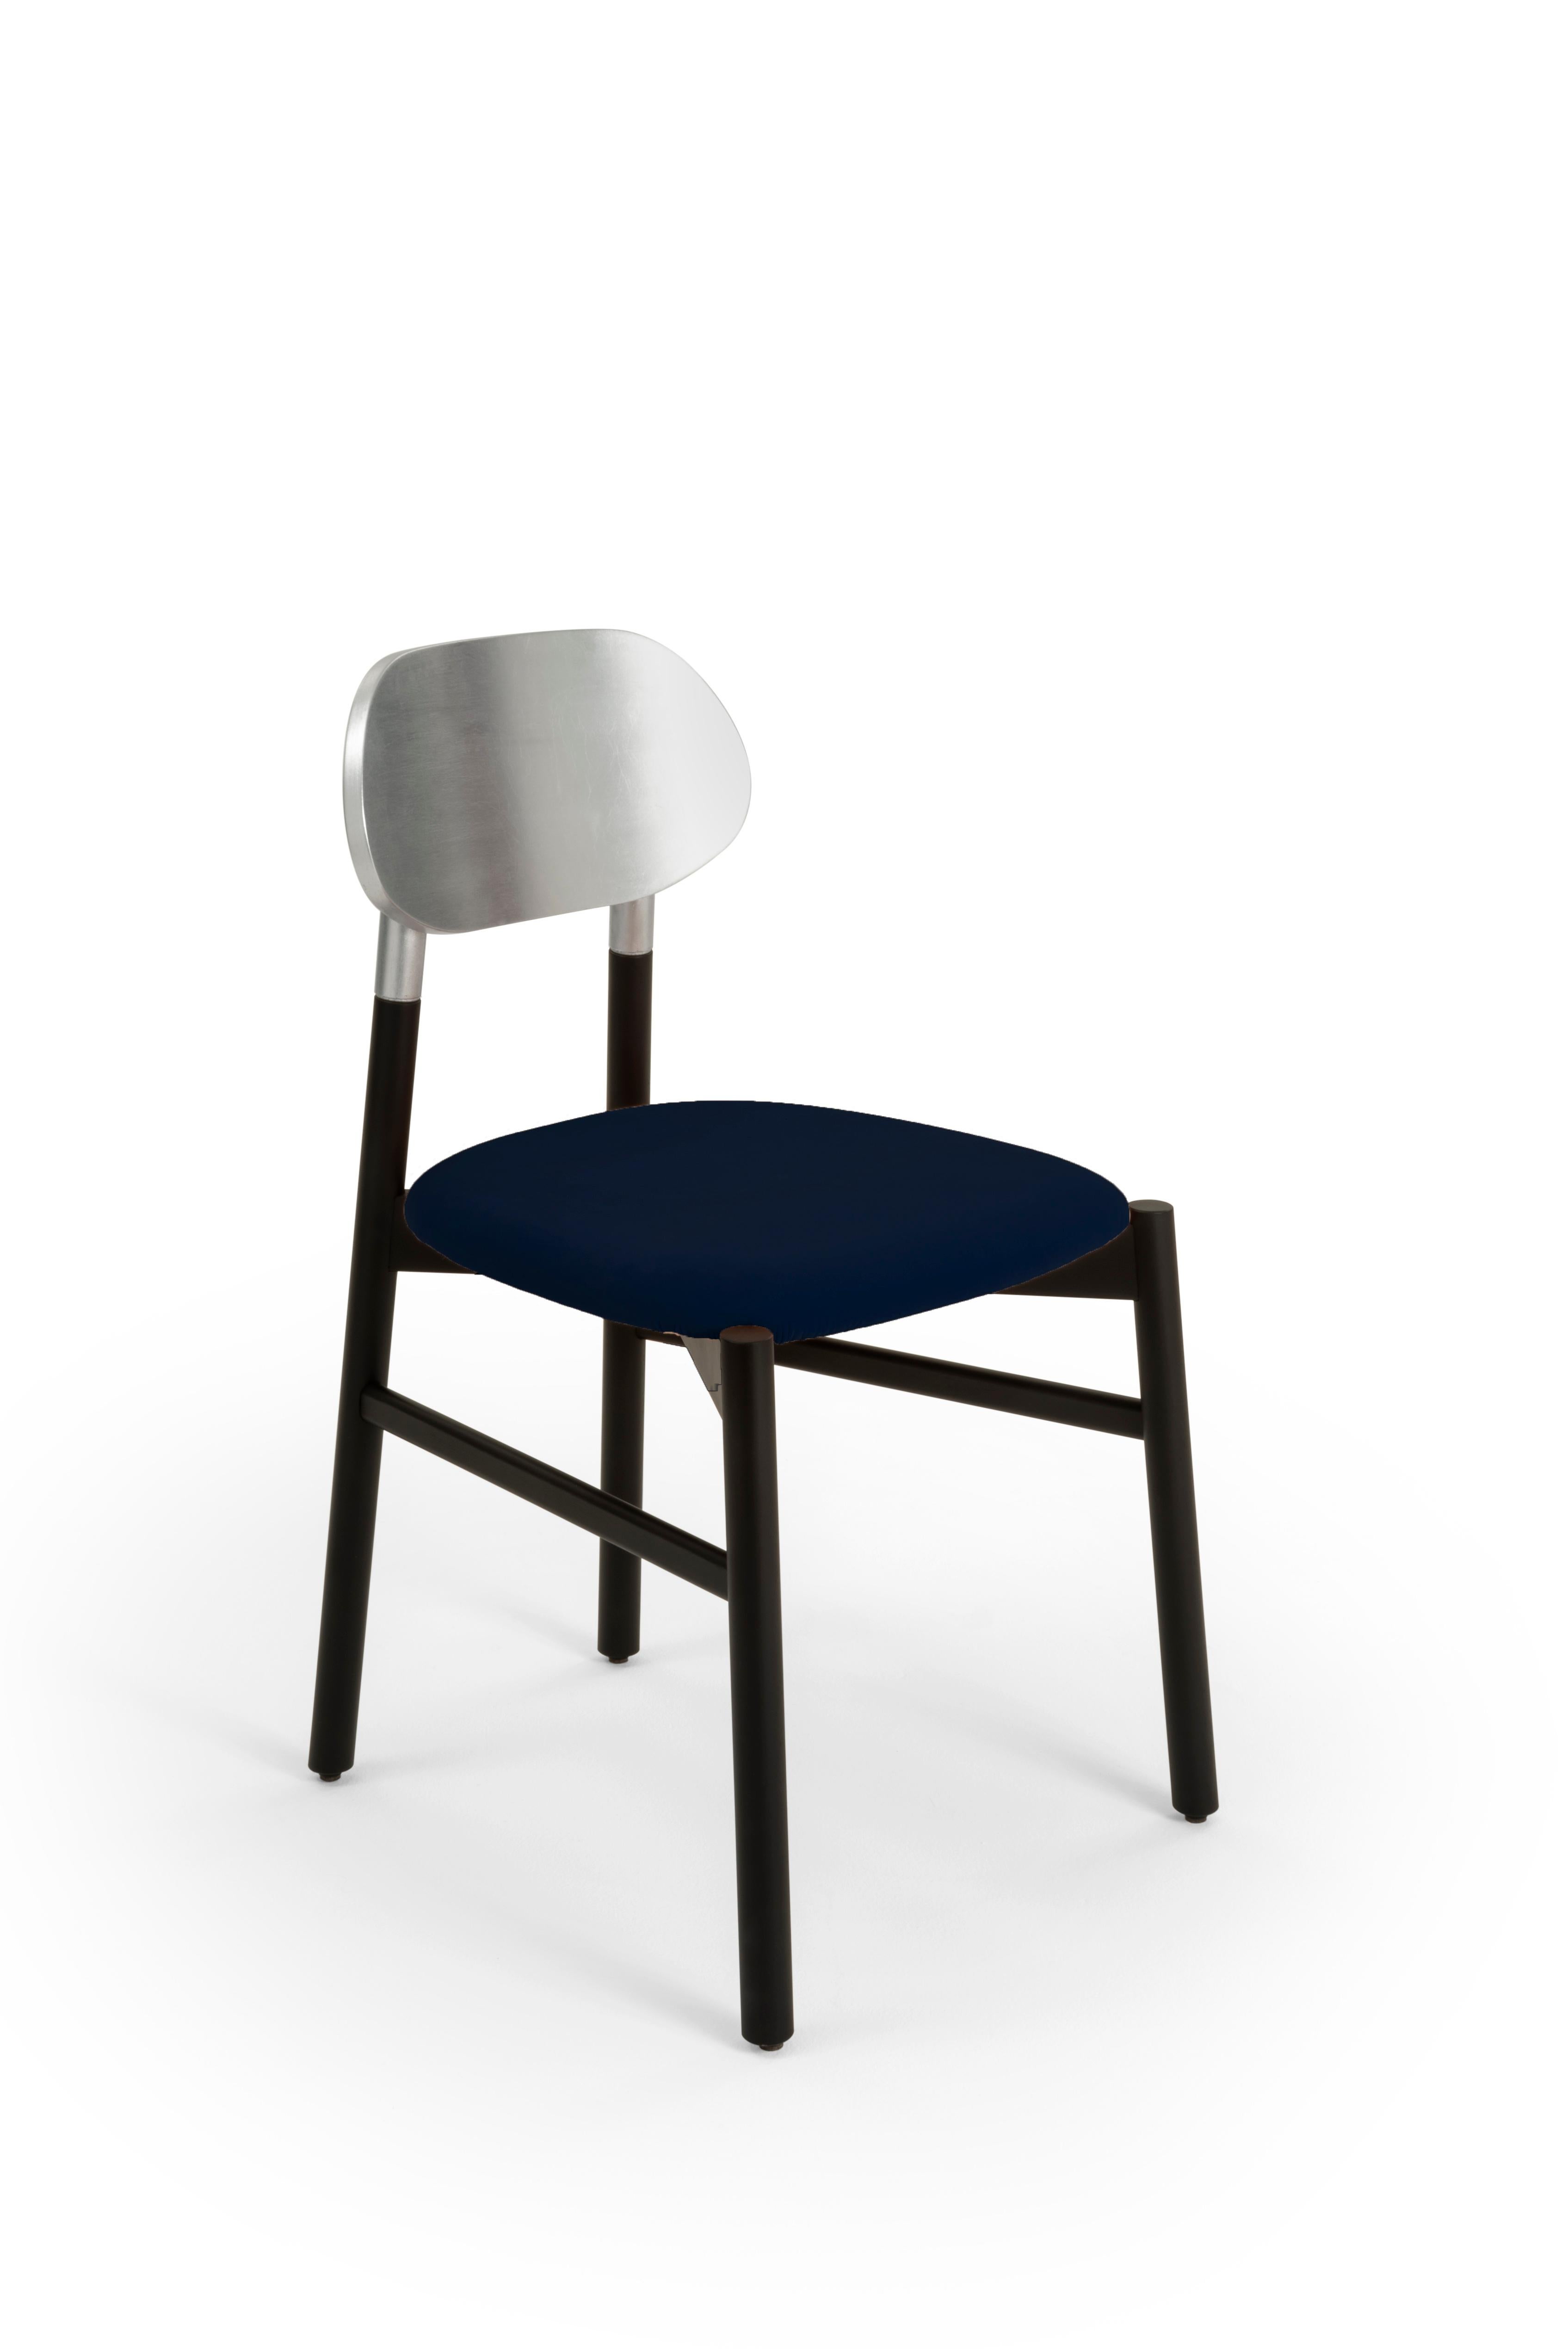 Gepolsterter Stuhl Bokken aus schwarz gebeiztem Buchenholz, Rückenlehne mit Blattsilber und gepolstertem Sitz, bezogen mit hochwertigem Rubelli-Samt. Italienische Qualität pur!
Ein unverzichtbarer Stuhl in der Form, aber kostbar in den Farben. Die